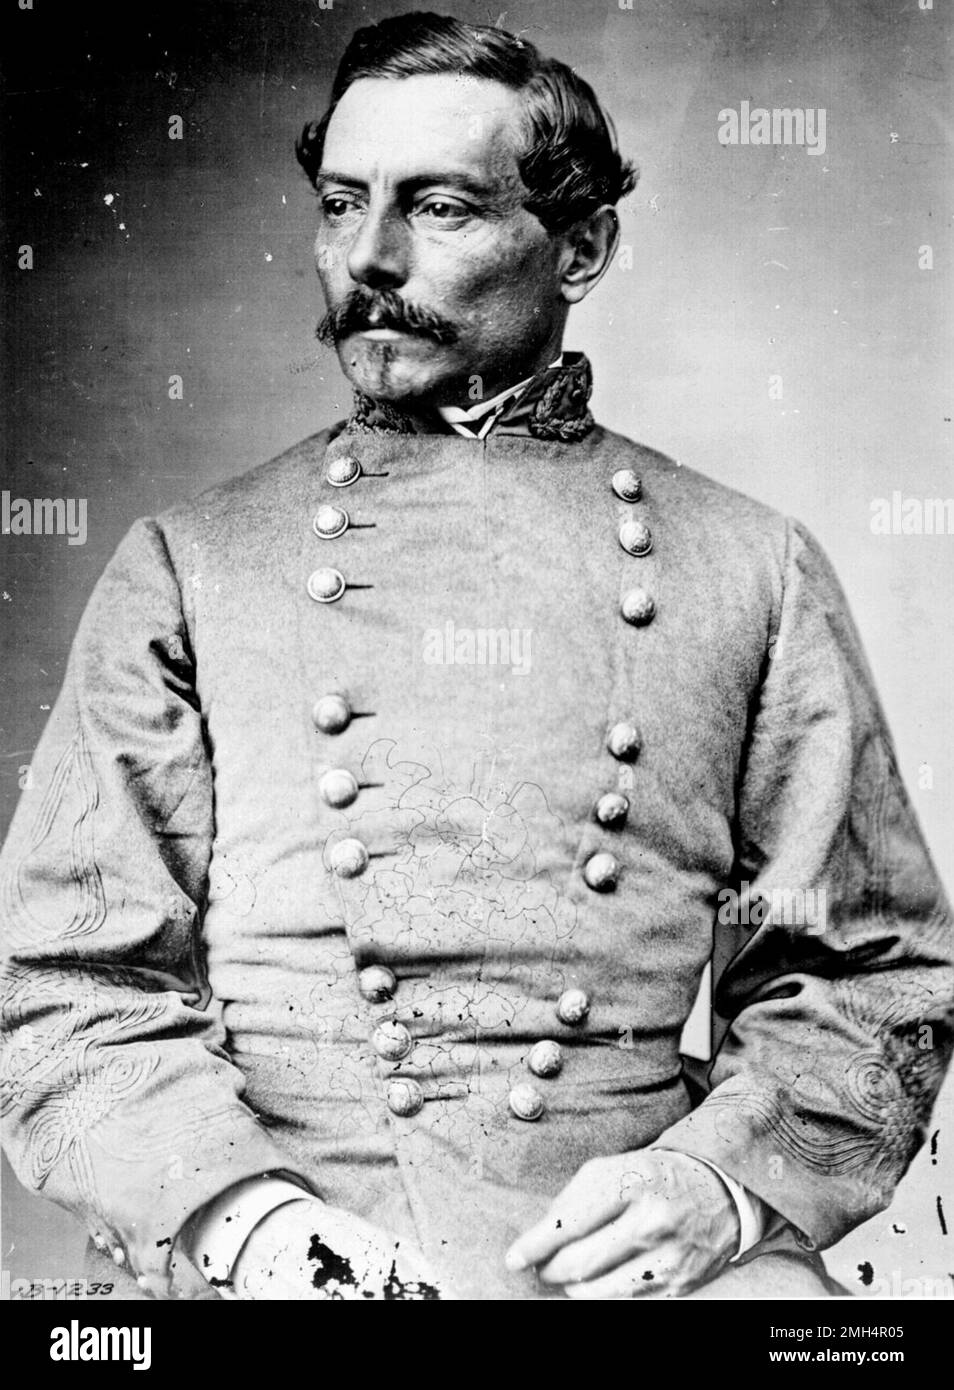 General Pierre Gustave Toutant de Beauregard, der Befehlshaber der Konföderierten des Bombenanschlags auf Fort Sumter war. Die Bombardierung und Gefangennahme von Fort Sumter durch die Konföderierten war die Eröffnungsschlacht im Amerikanischen Bürgerkrieg. Stockfoto